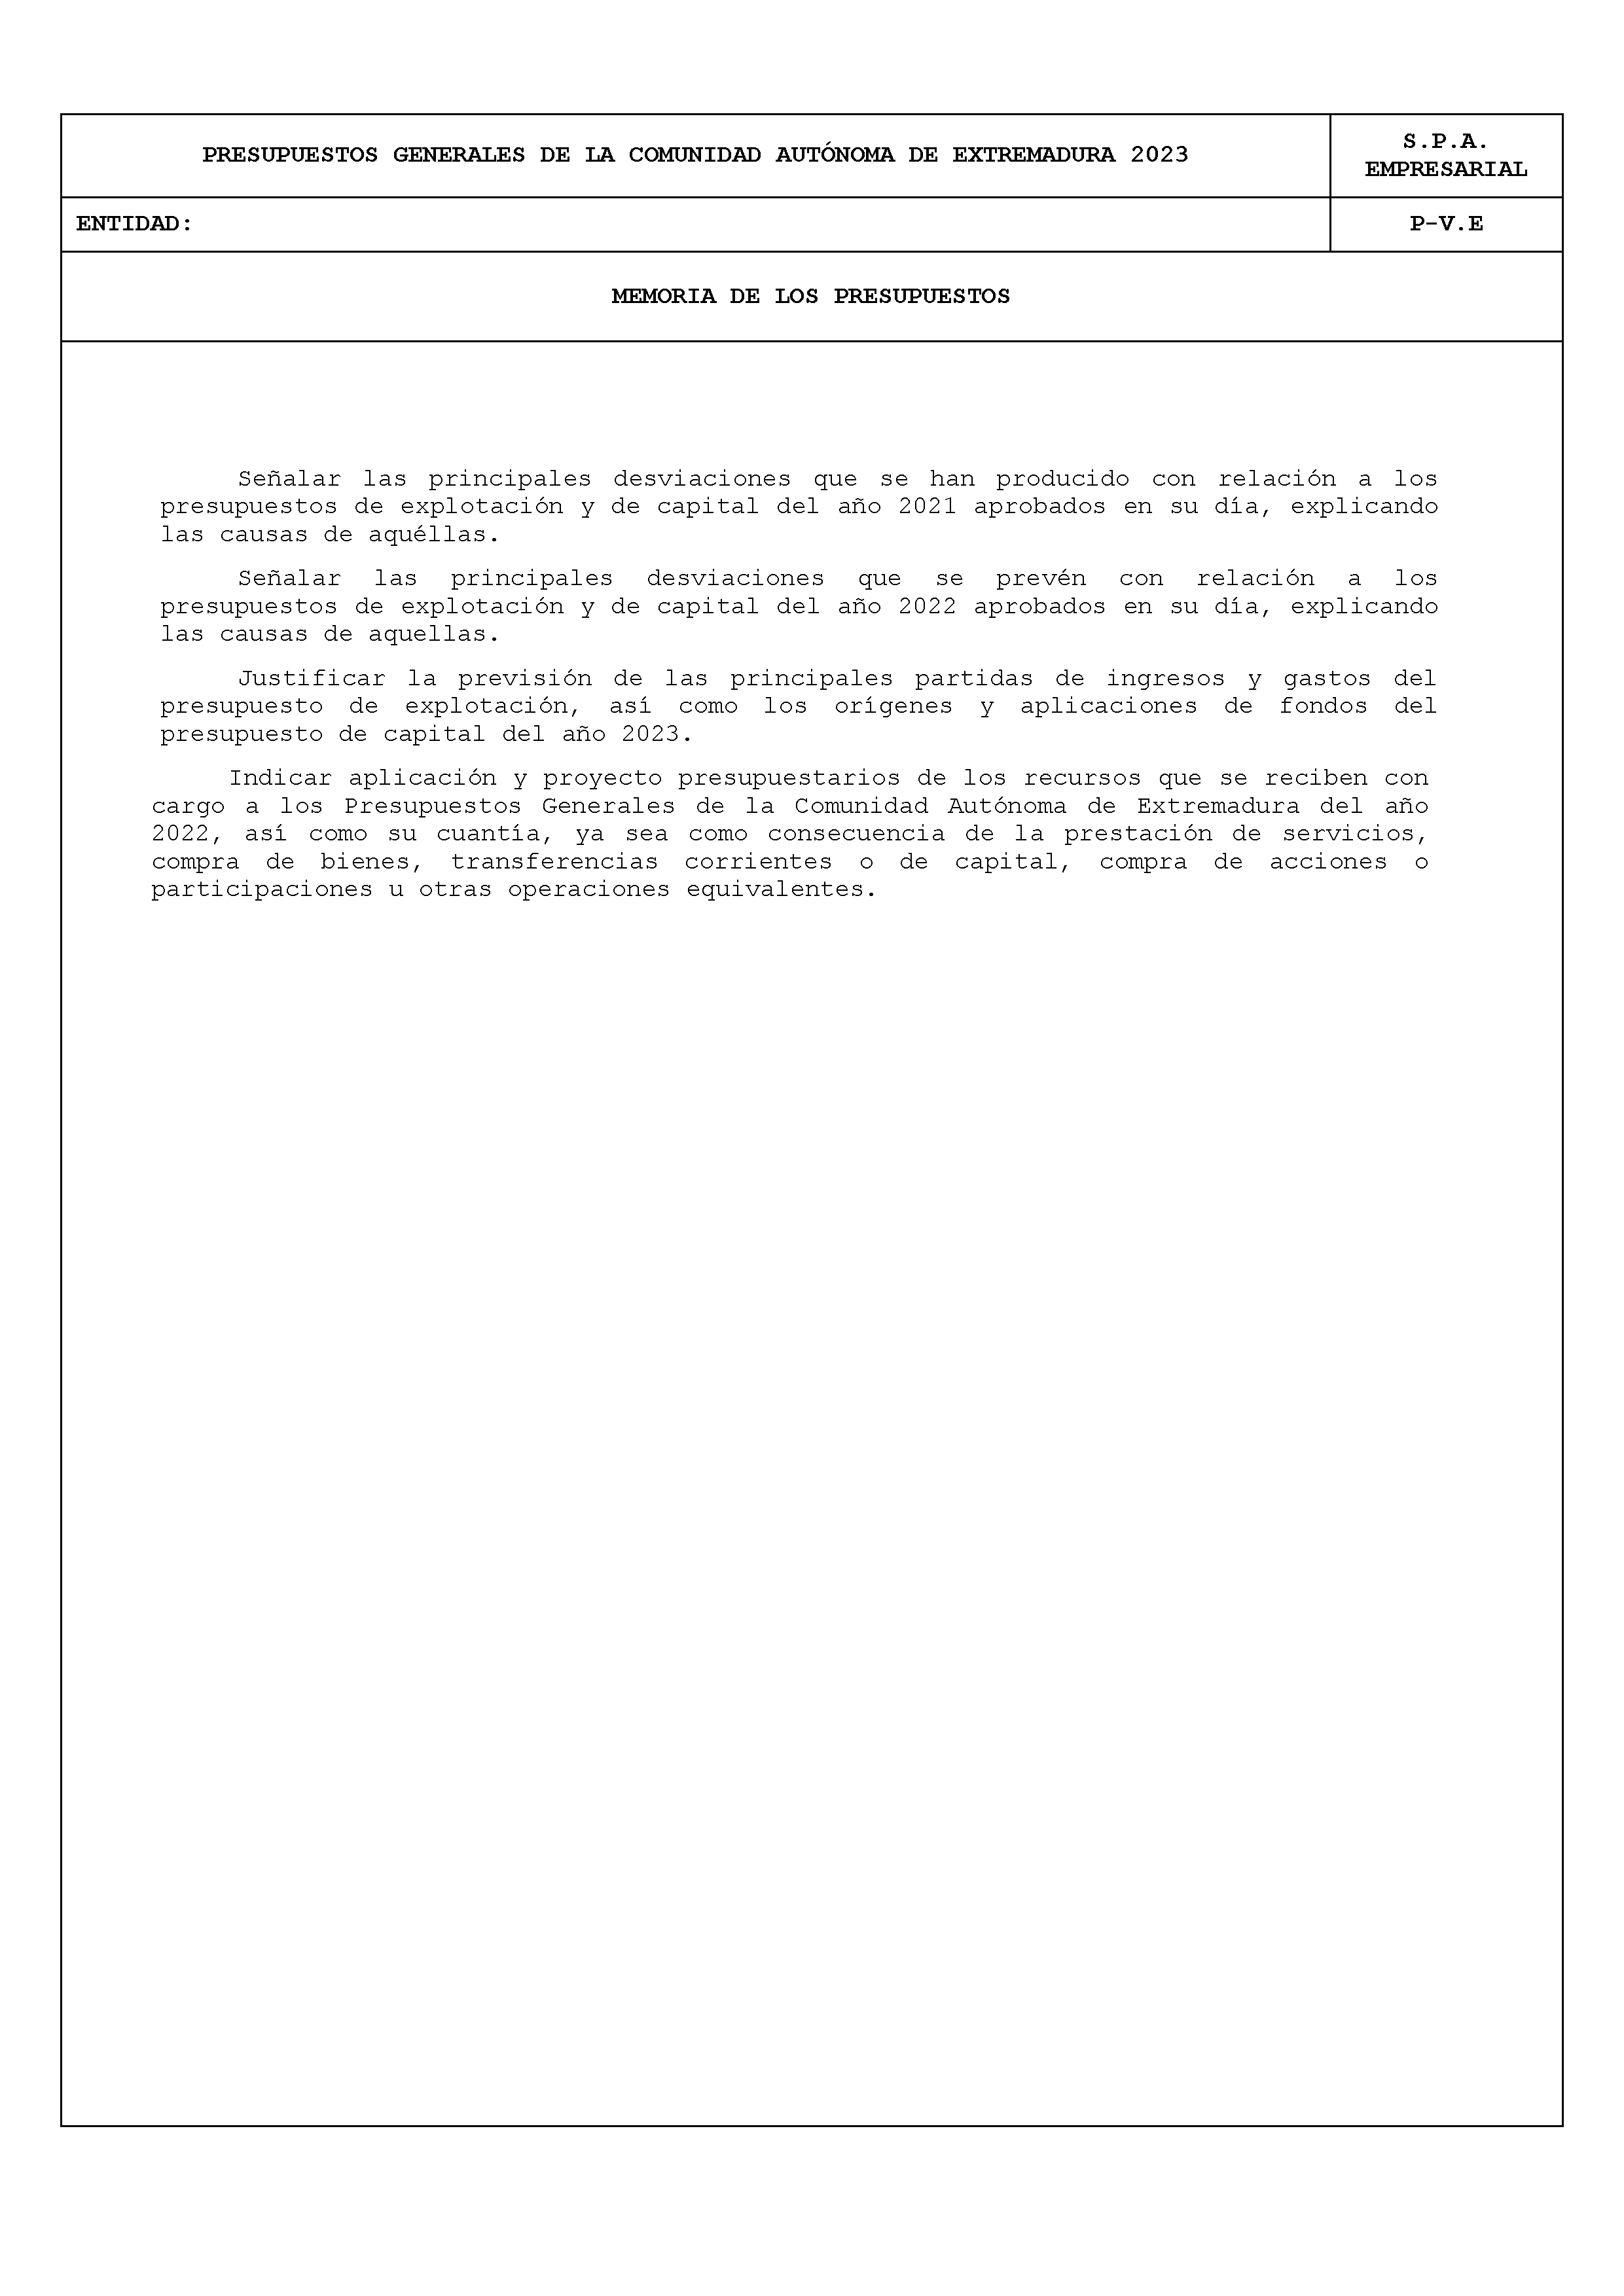 ANEXO XI FICHAS DE CUMPLIMENTACIÓN DEL SECTOR PÚBLICO AUTONÓMICO CON PRESUPUESTO ESTIMATIVO Pag 14